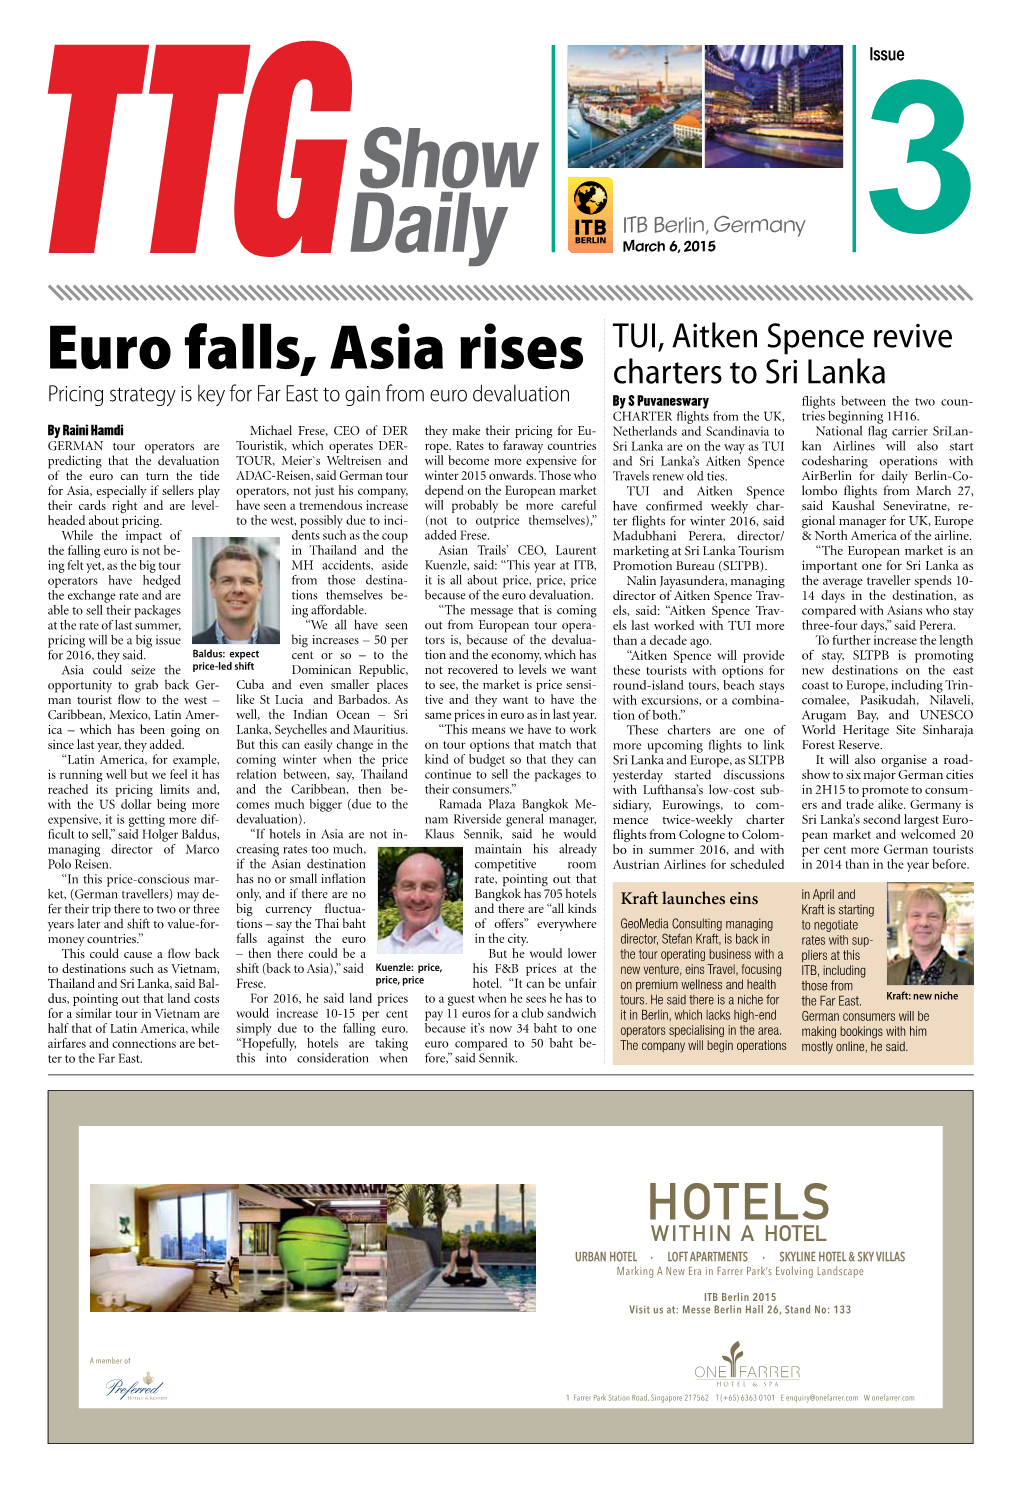 Euro Falls, Asia Rises